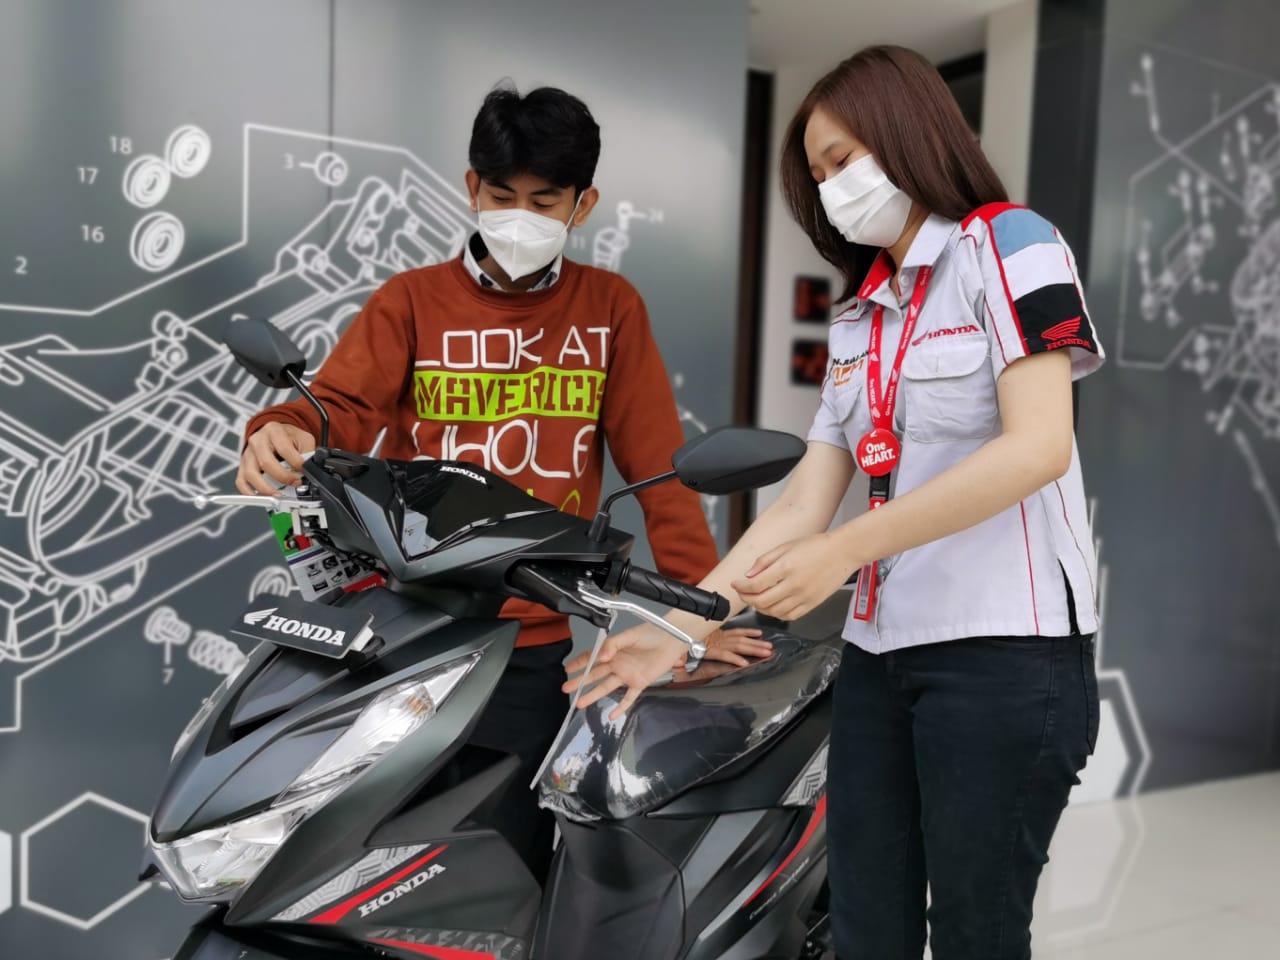 Program Pesta Honda, Penawaran Menarik Spesial Akhir Tahun